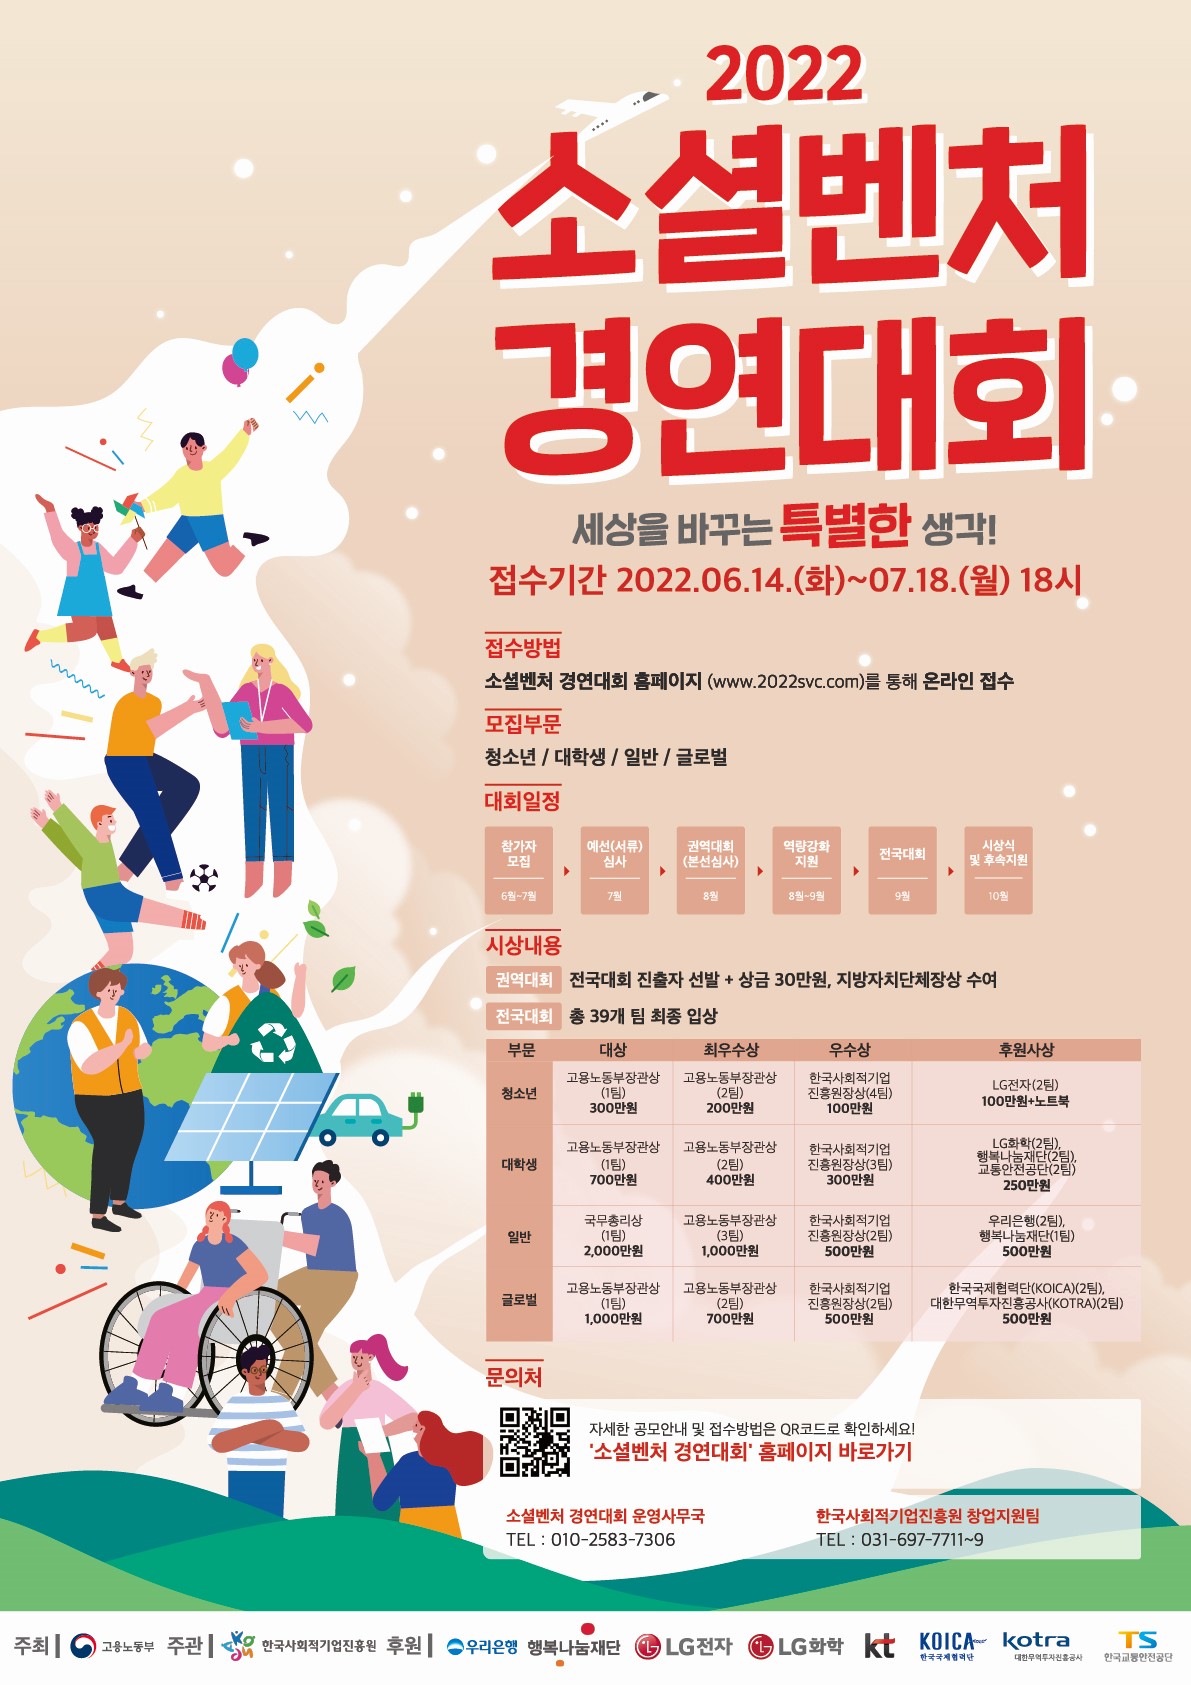 「2022 소셜벤처 경연대회」 개최 알림